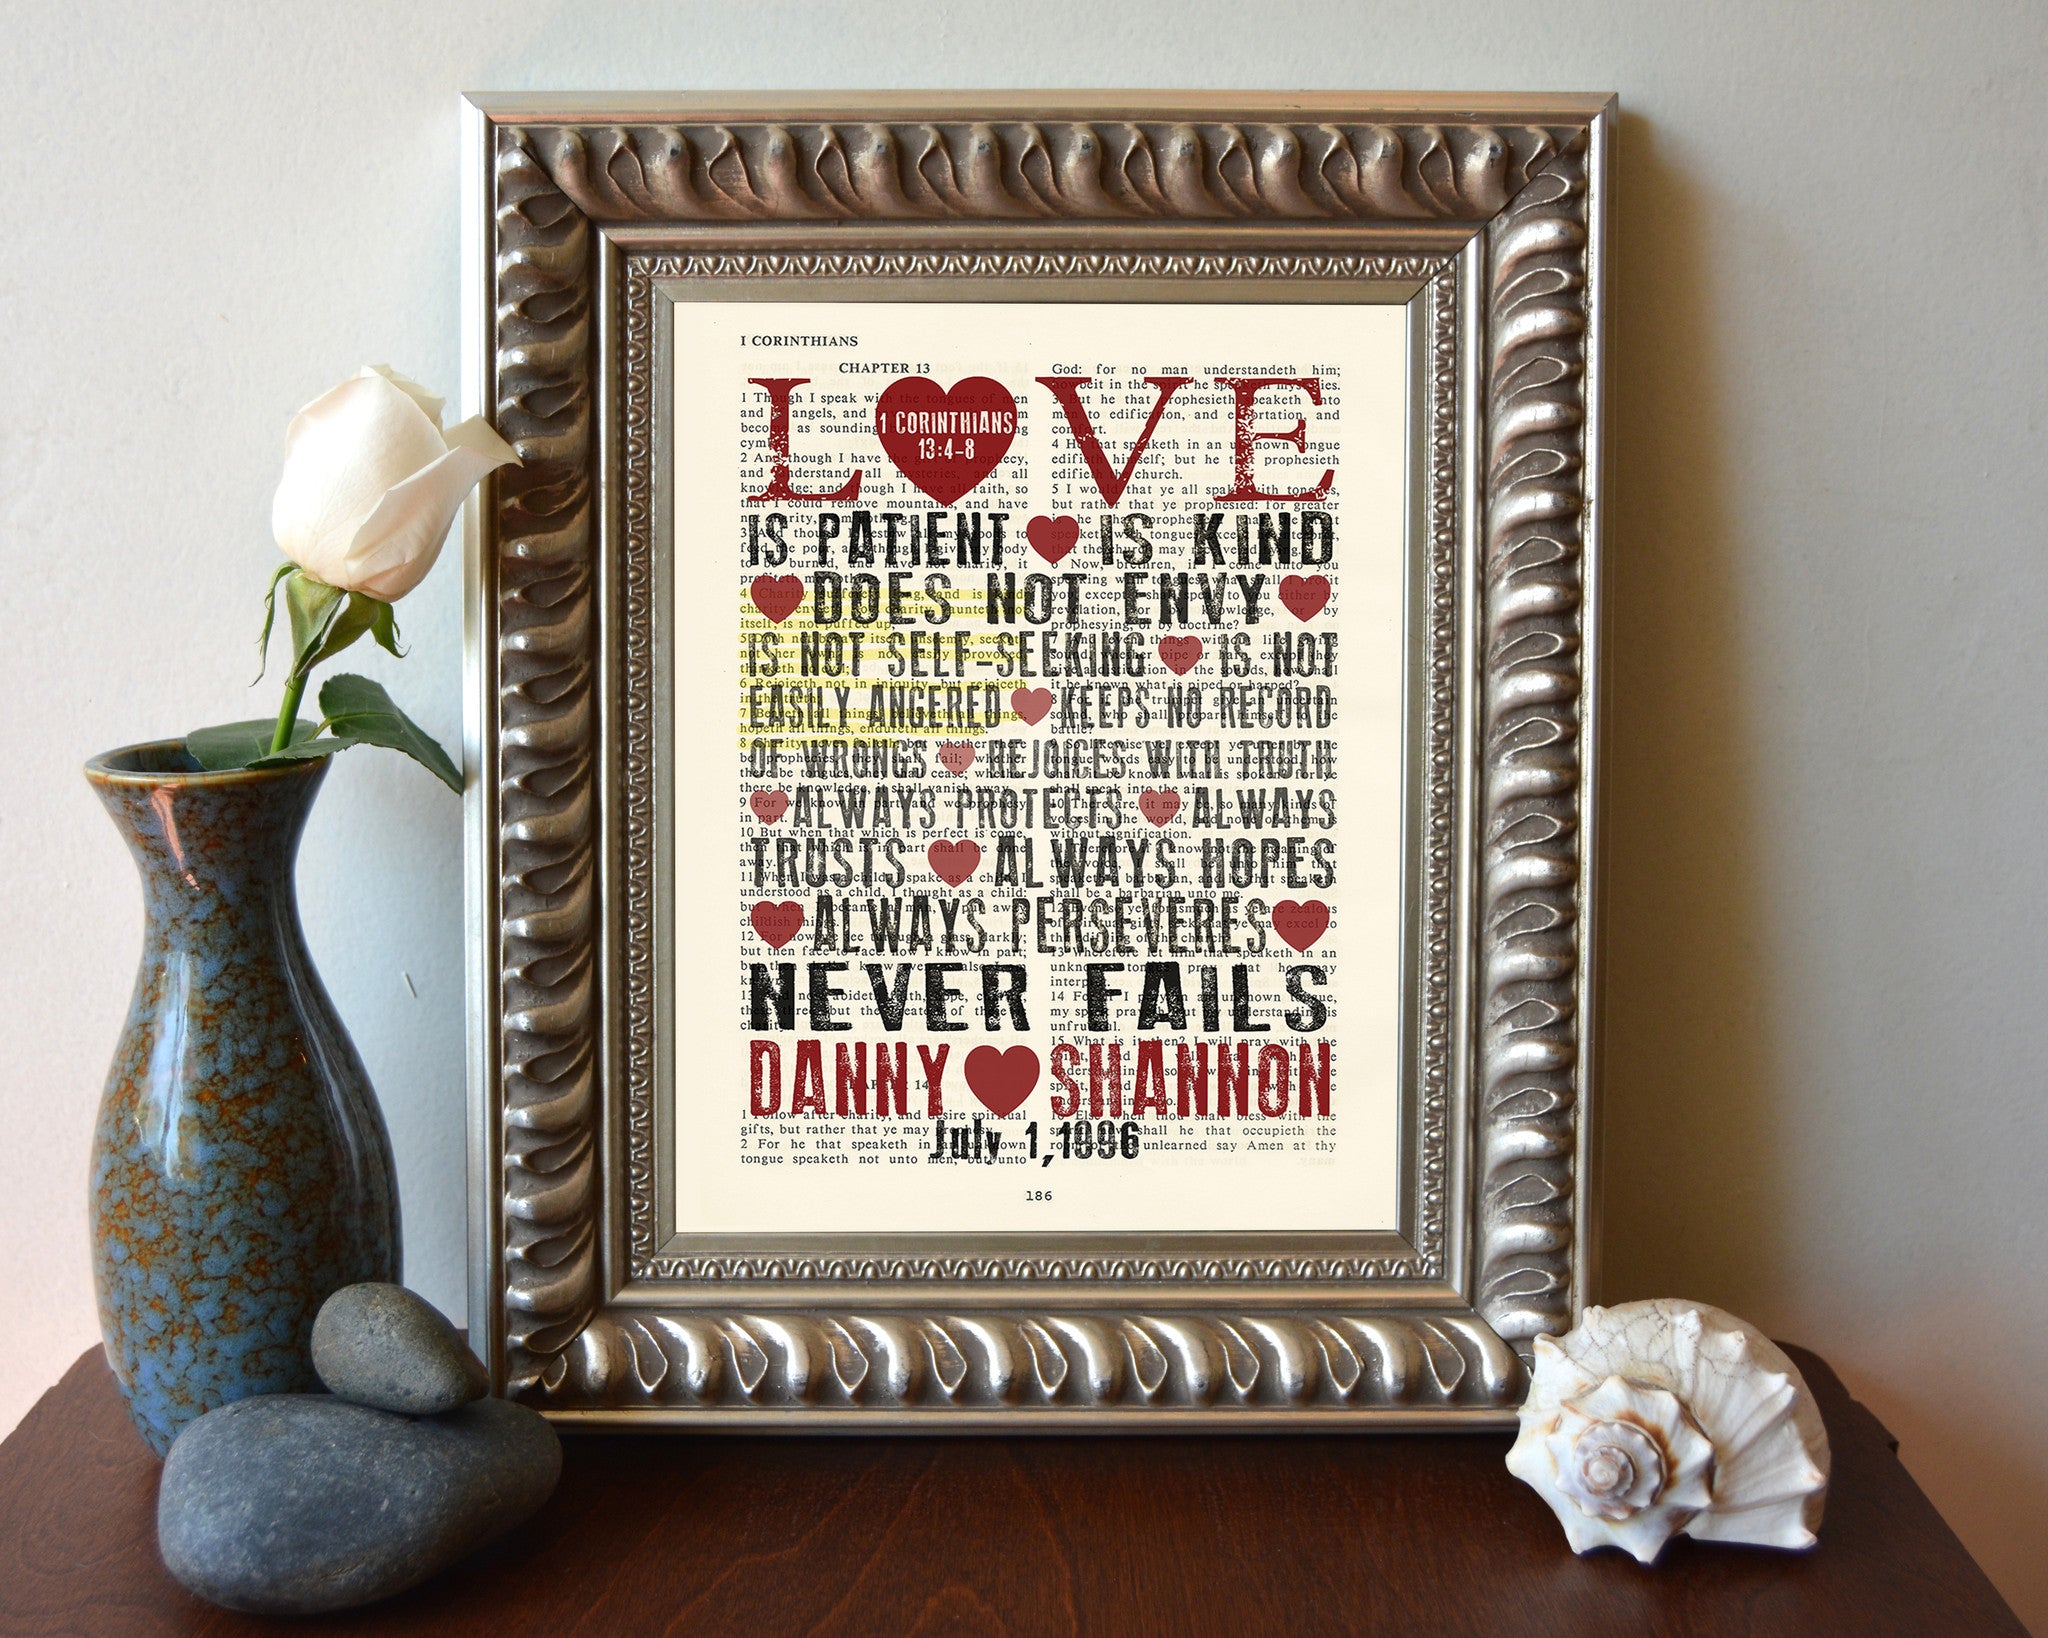 1 Corinthians 13:4, 7-8 Love Is Patient Wall Plaque, 23.5 x 15.75